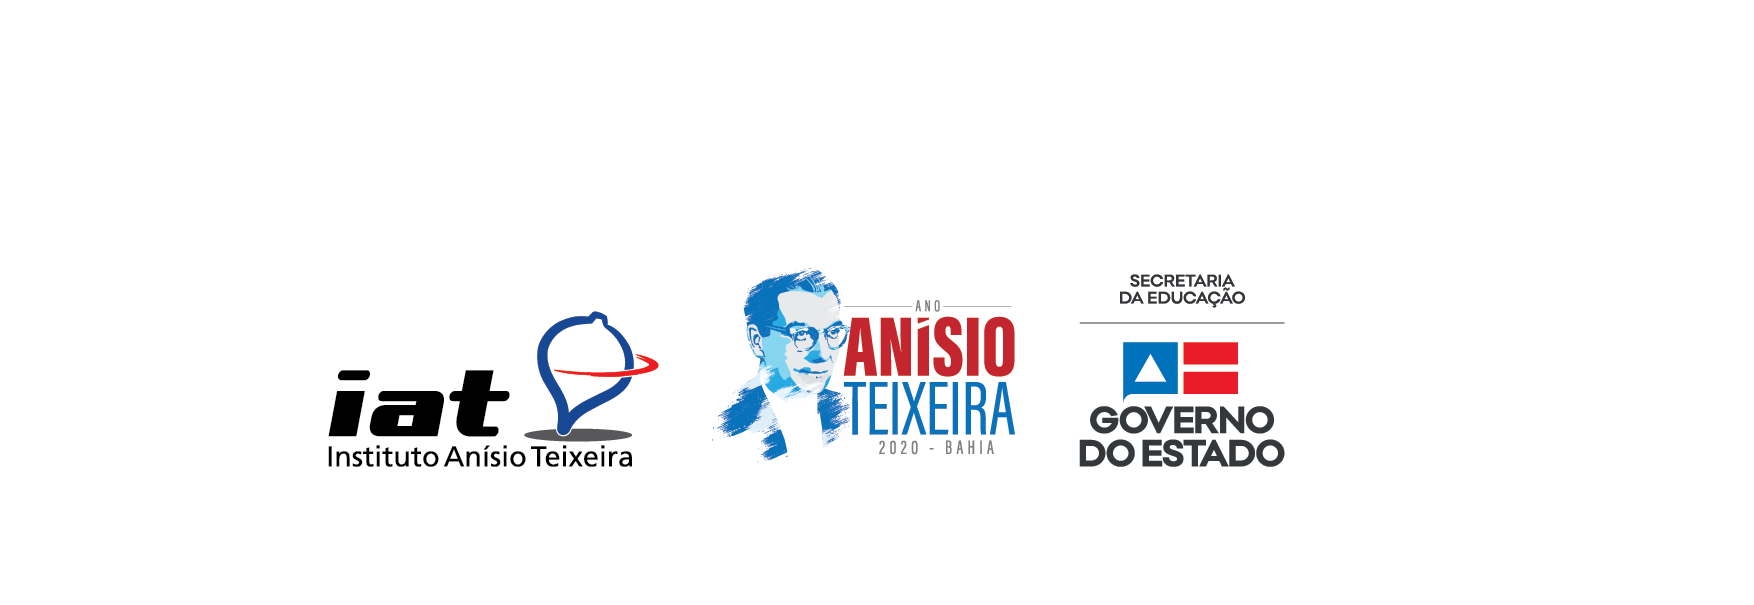 Instituto Anísio Teixeira - Ano Anísio Teixeira - Secretaria da Educação do Estado da Bahia